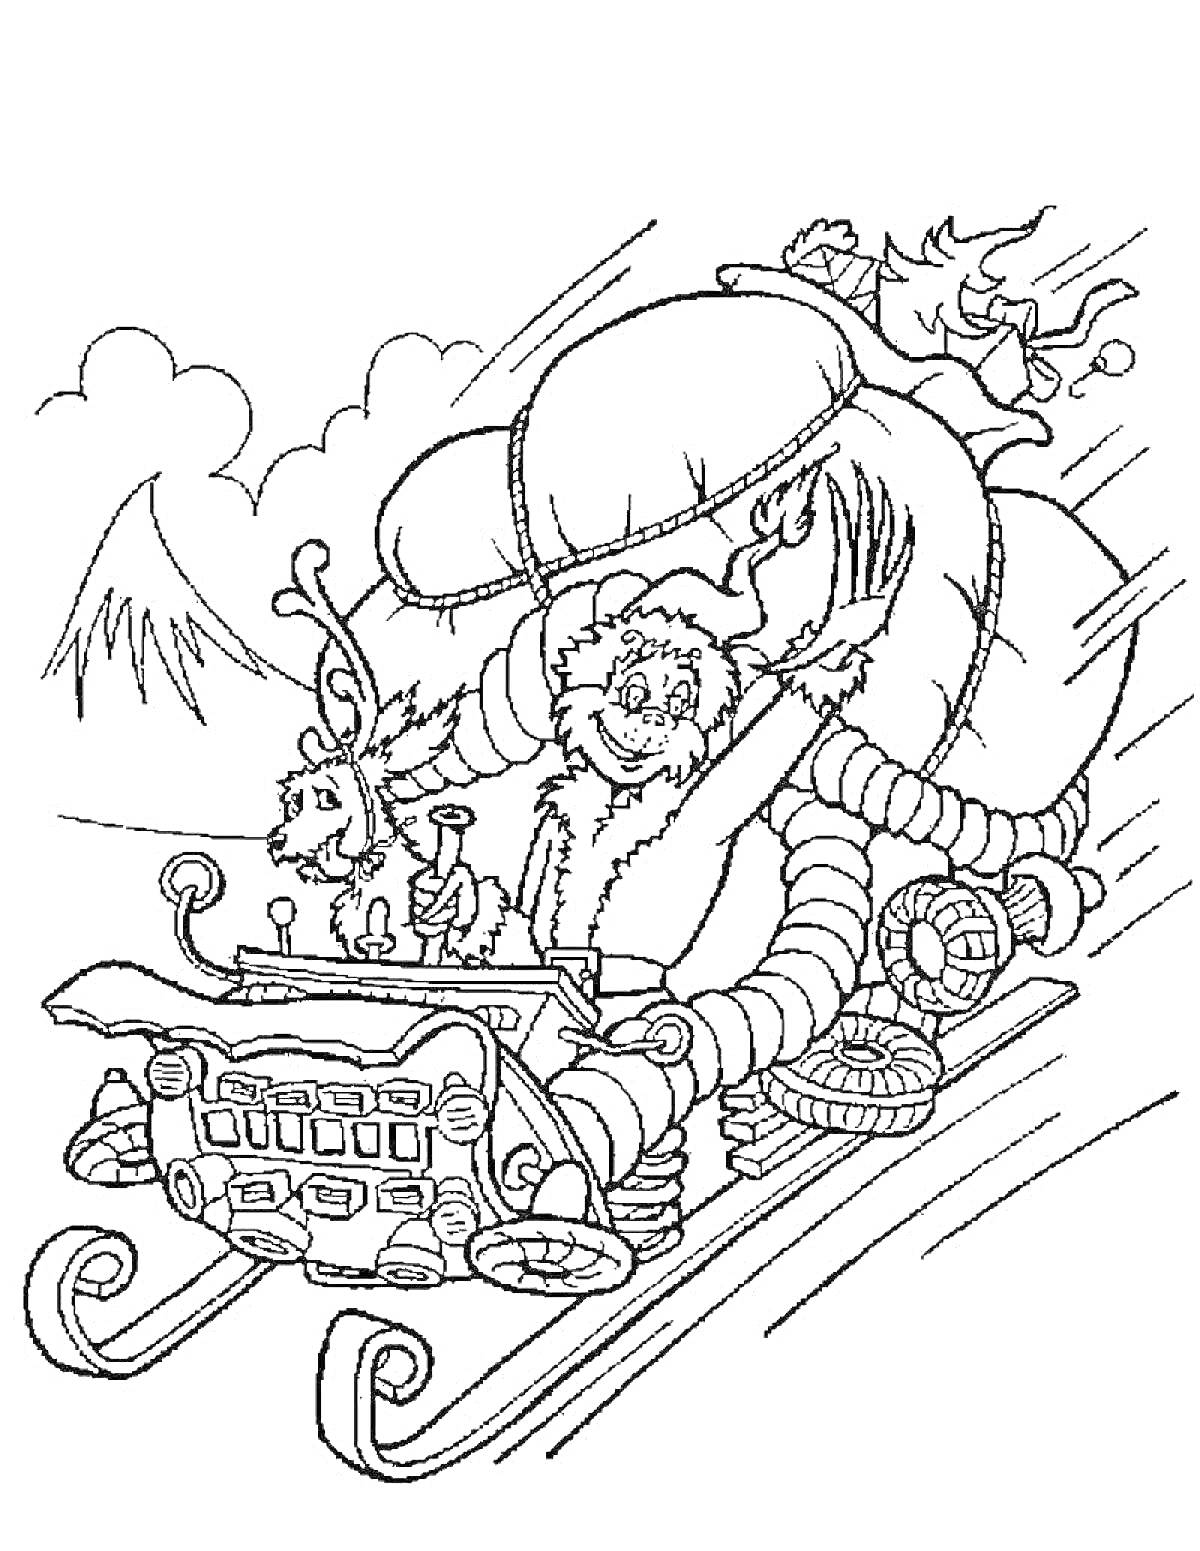 Гринч, едущий на санях с оленем, везет мешок с подарками, горы на заднем плане